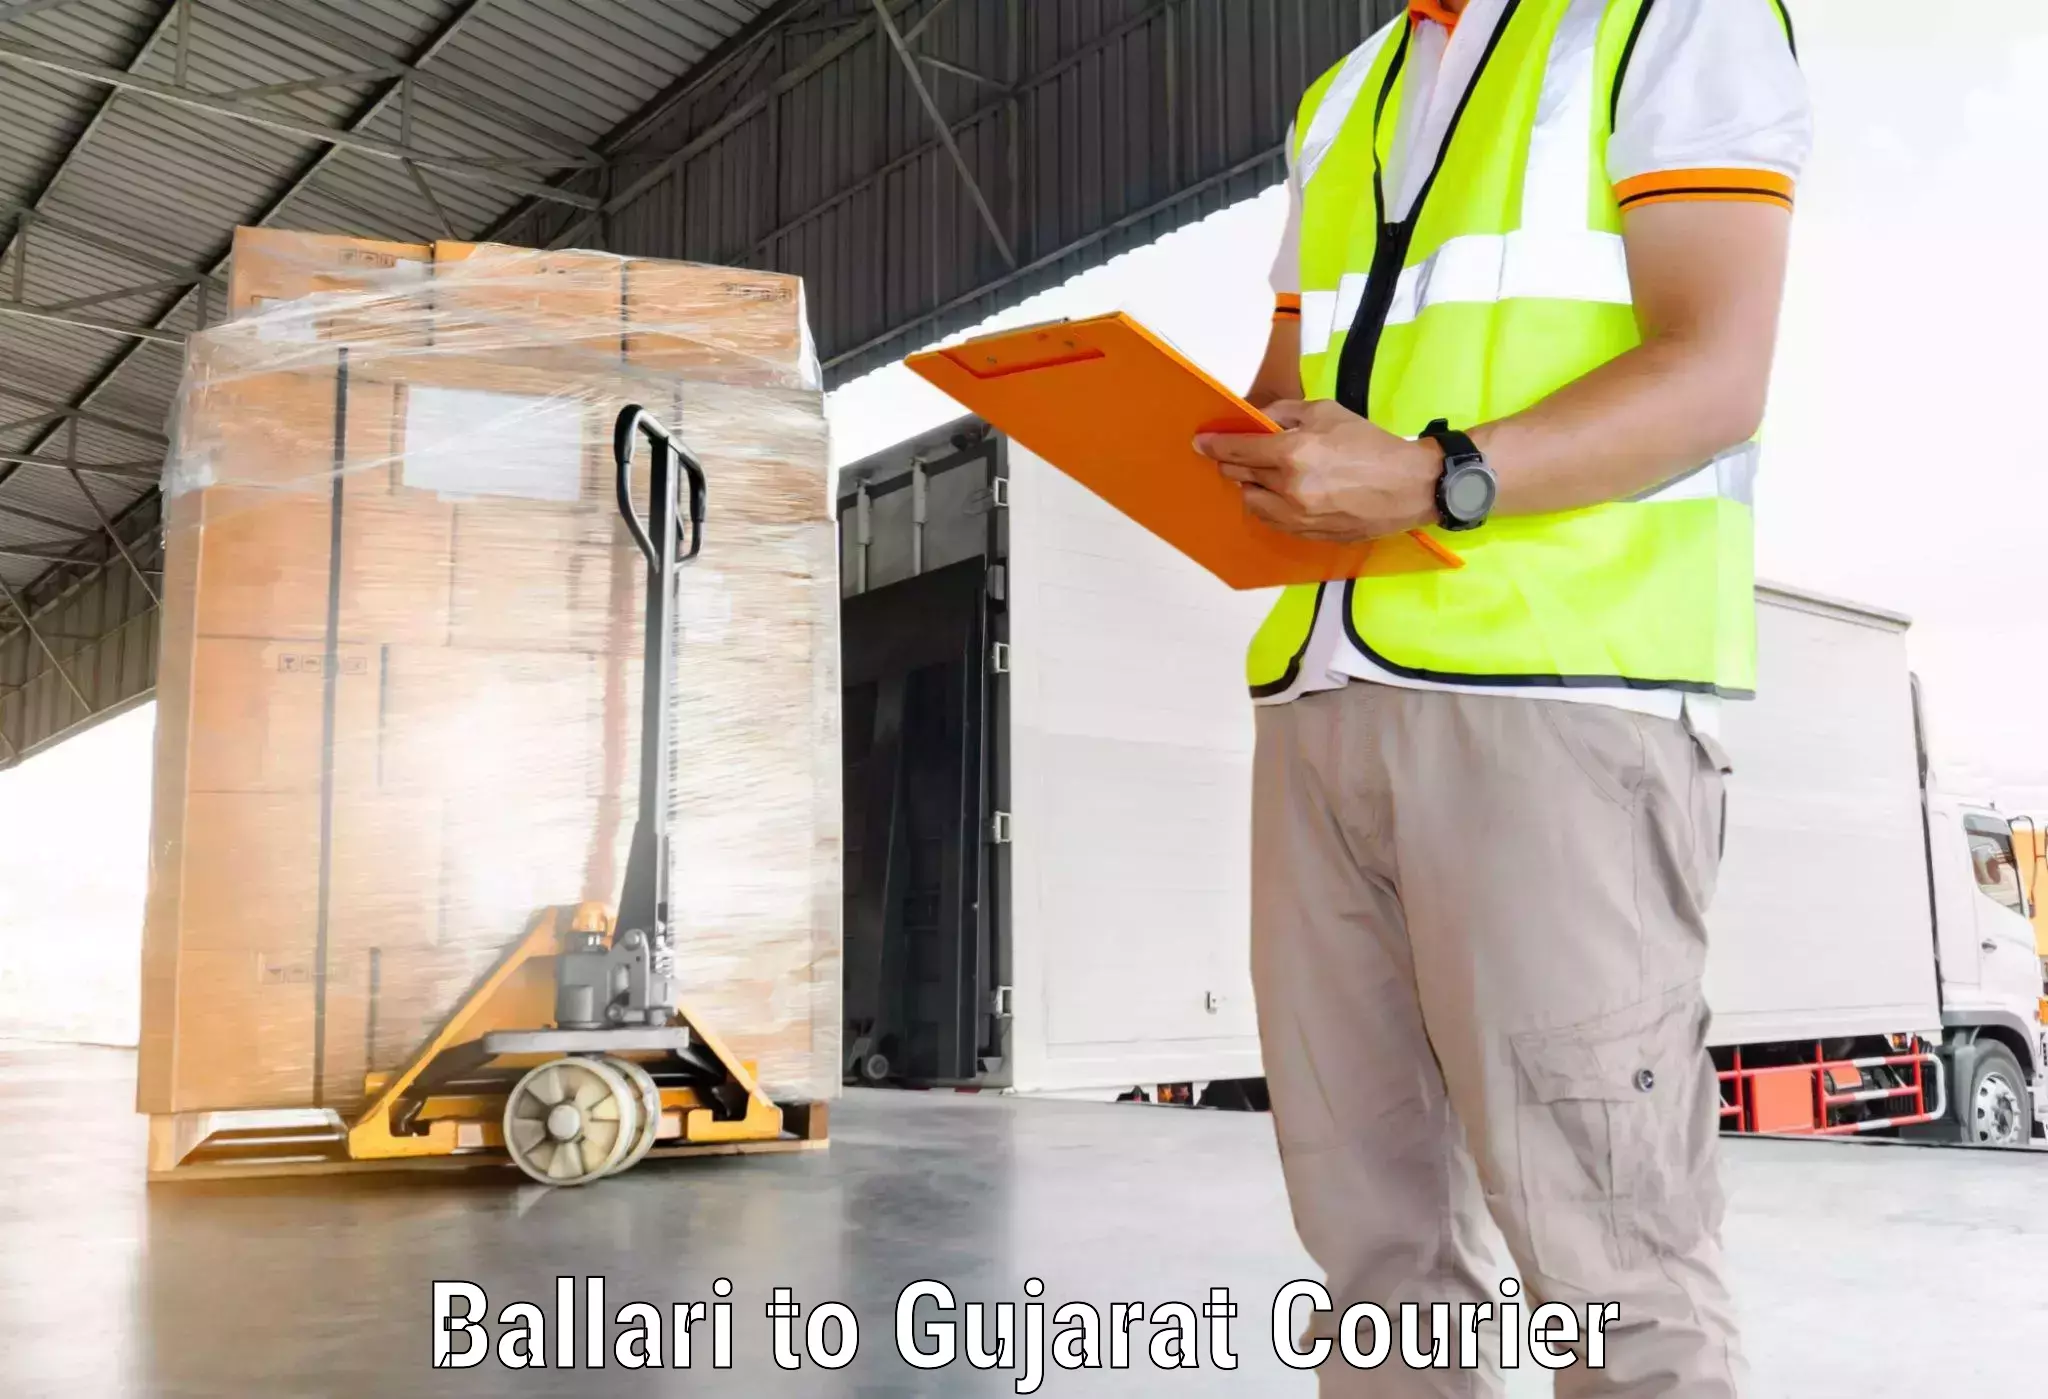 High-priority parcel service in Ballari to Navsari